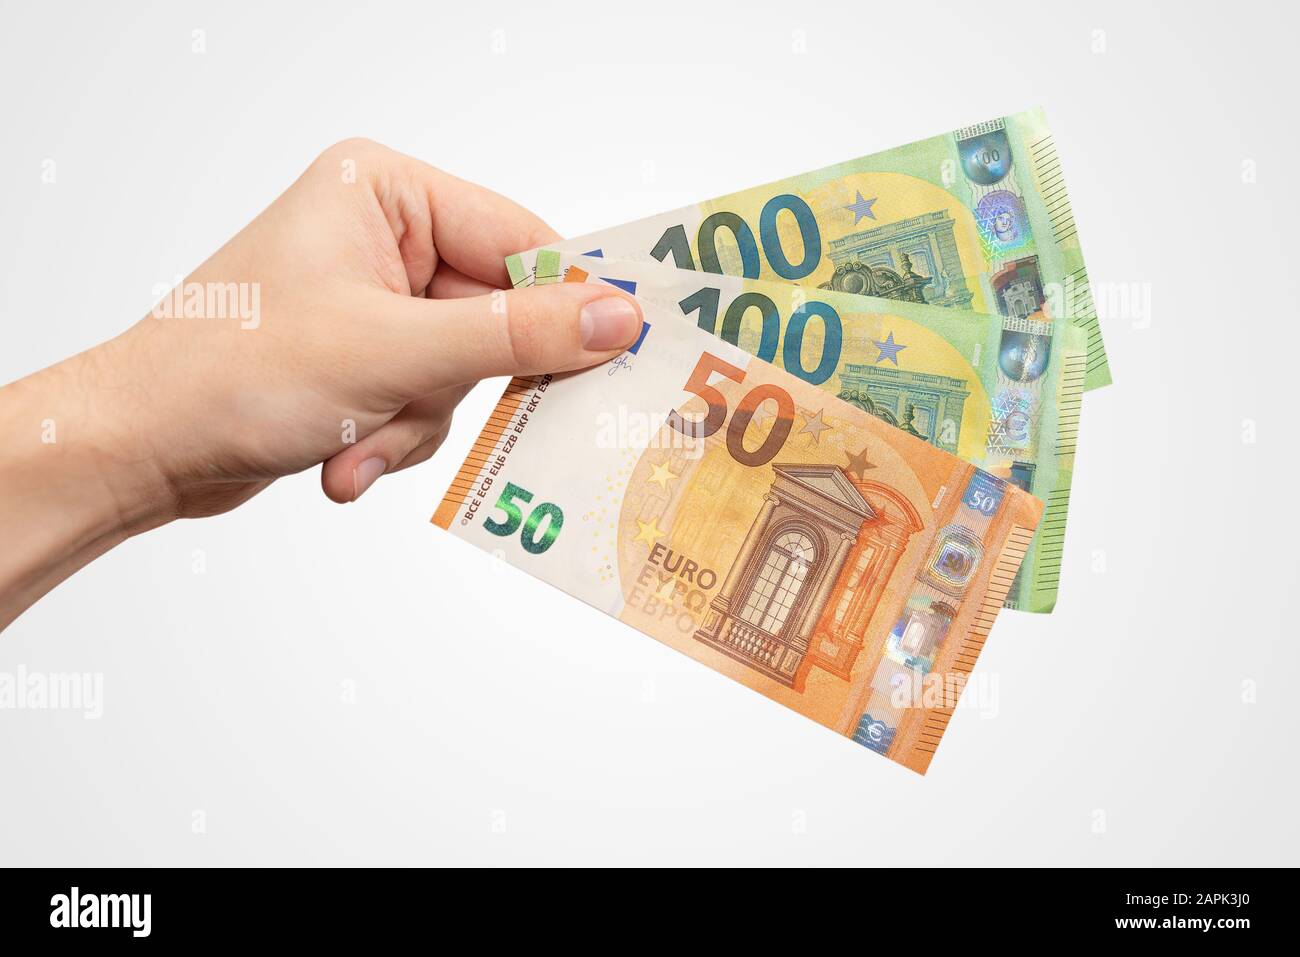 Main contenant des billets EUR. Monnaie européenne, concept de salaire ou de prêt, isolé à la main Banque D'Images